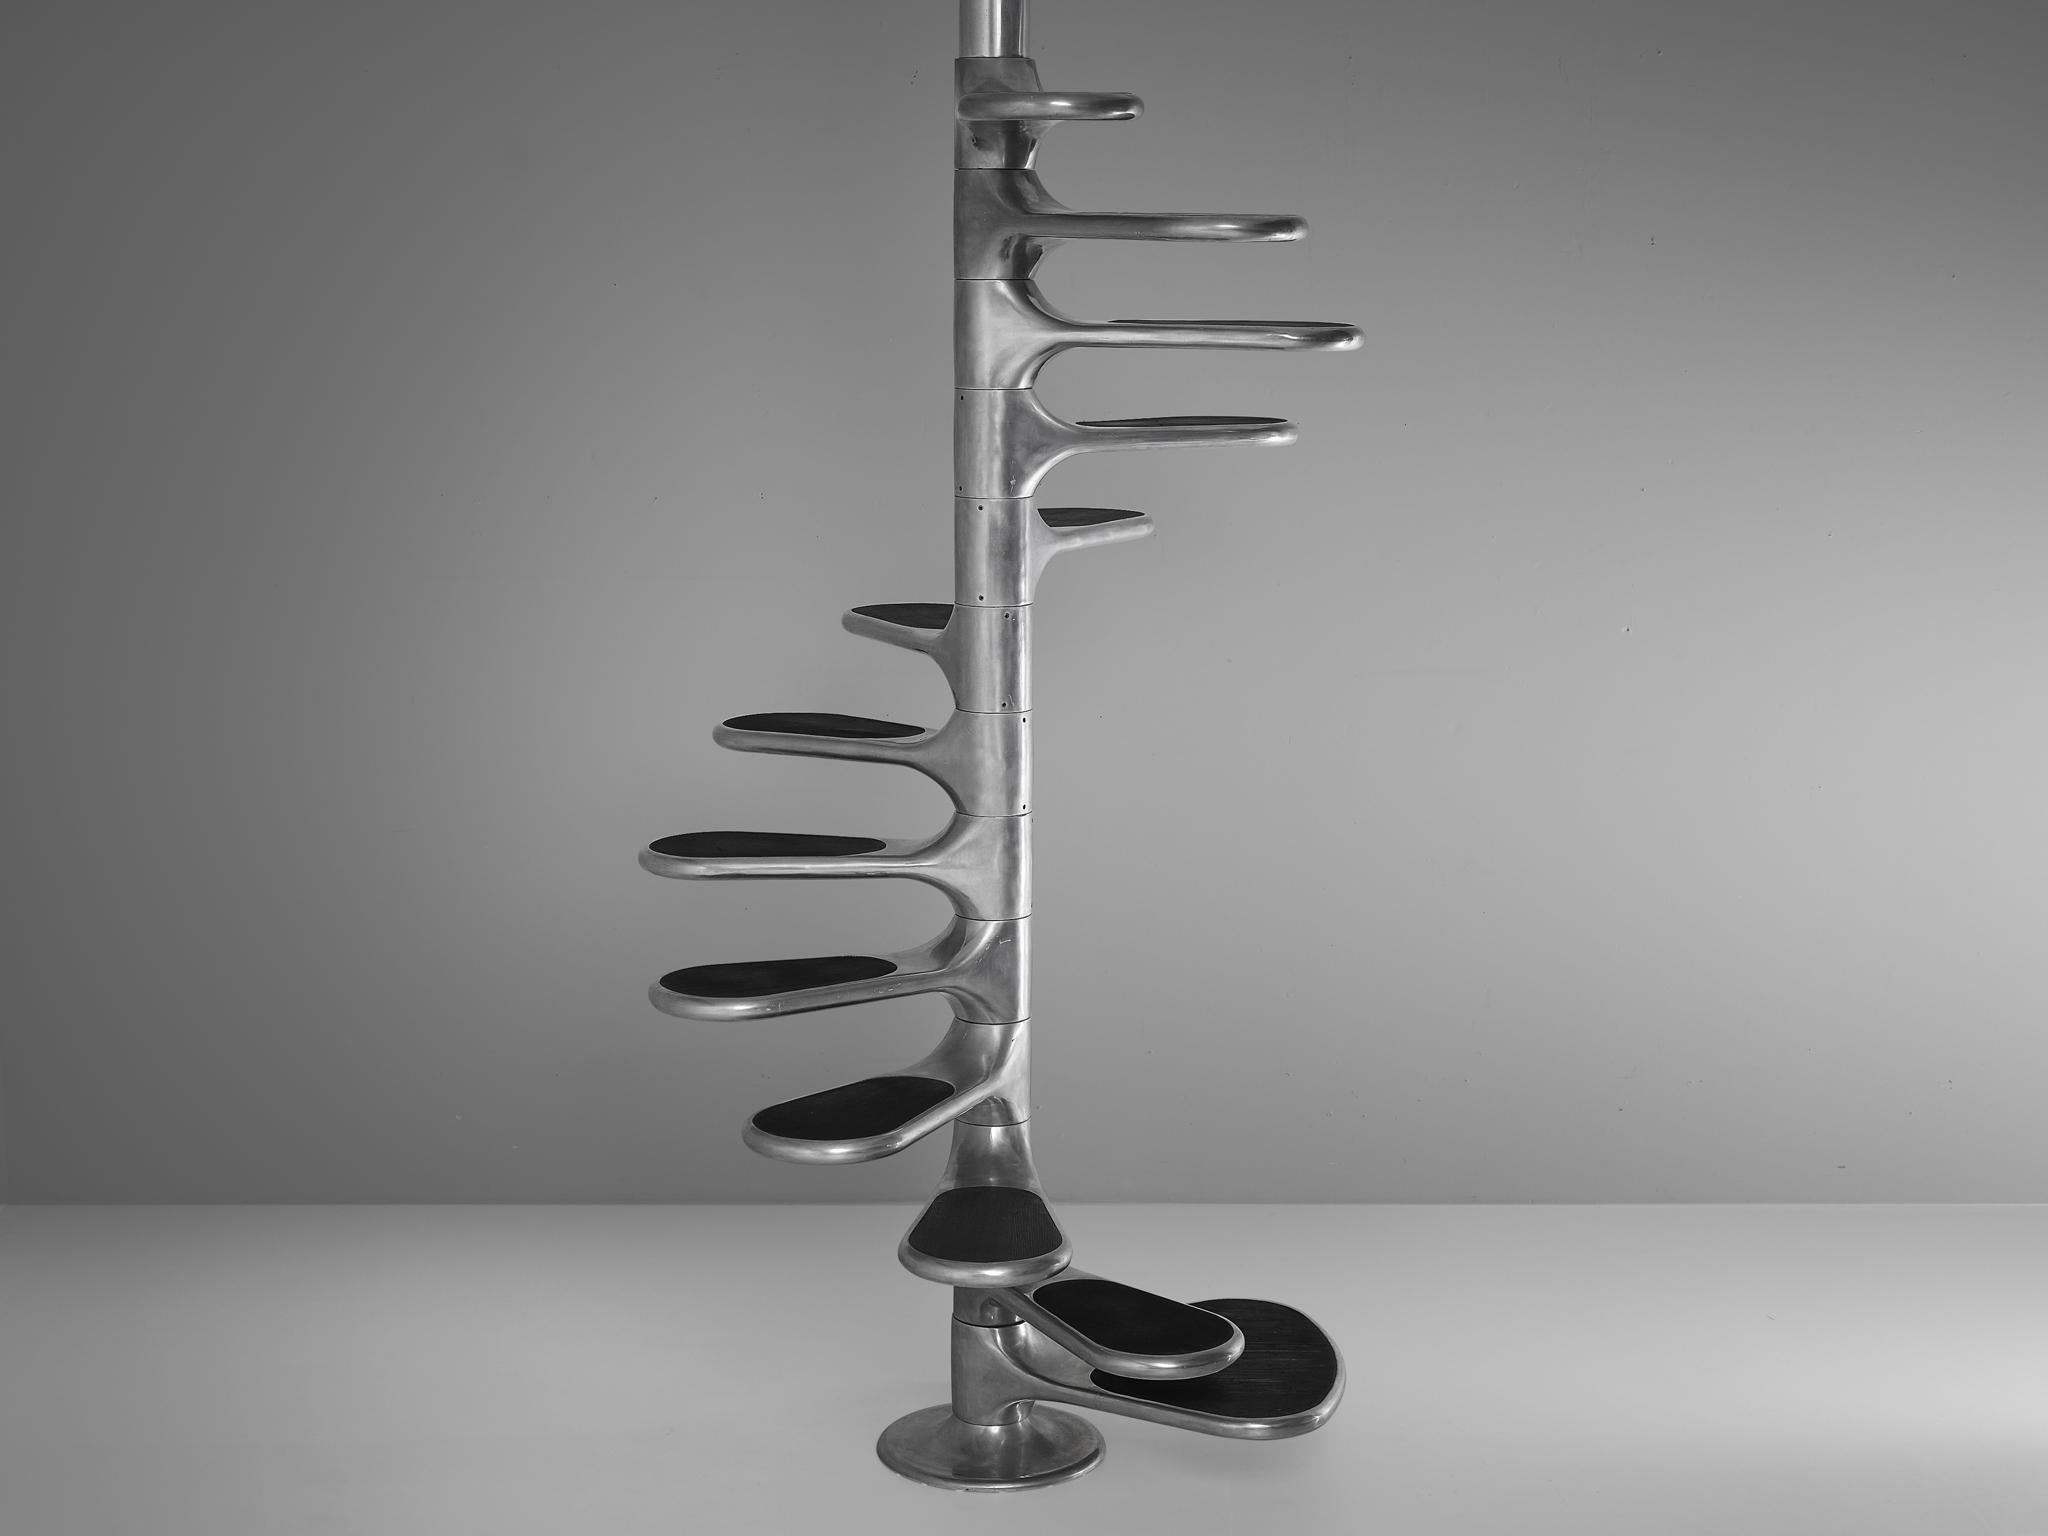 Roger Tallon für Galerie LaCloche, 'Helicoid'-Treppe, Aluminium, Gummi, Frankreich, Entwurf 1964, Produktion 1960er Jahre

Diese auffällige Treppe mit Gummistufen heißt 